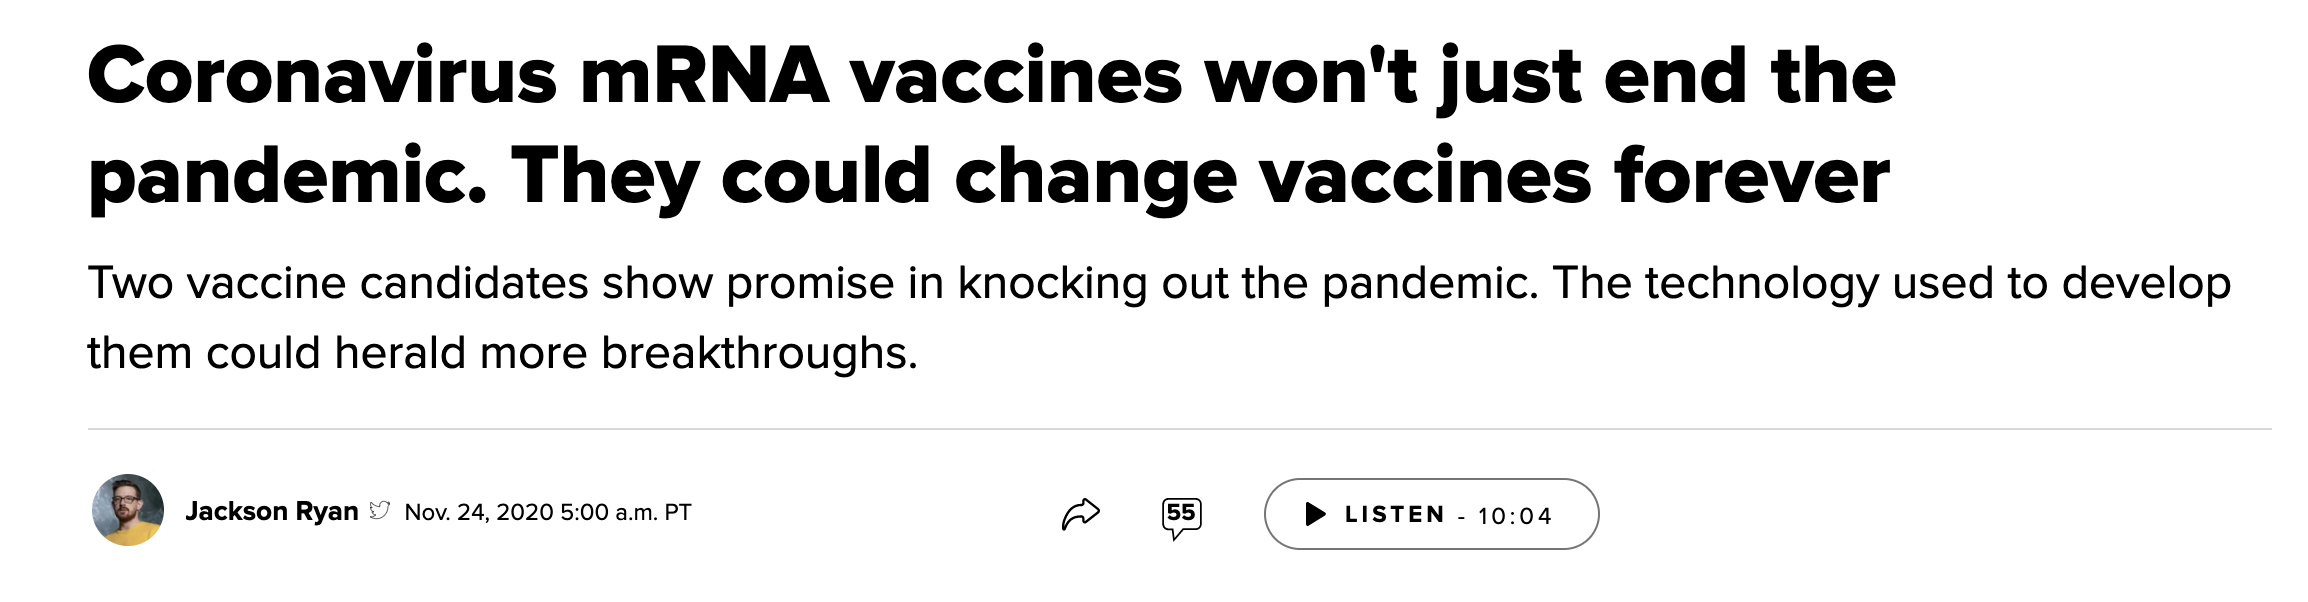 每年夺命1000万的癌症，将被这路新冠疫苗“顺手治愈”？